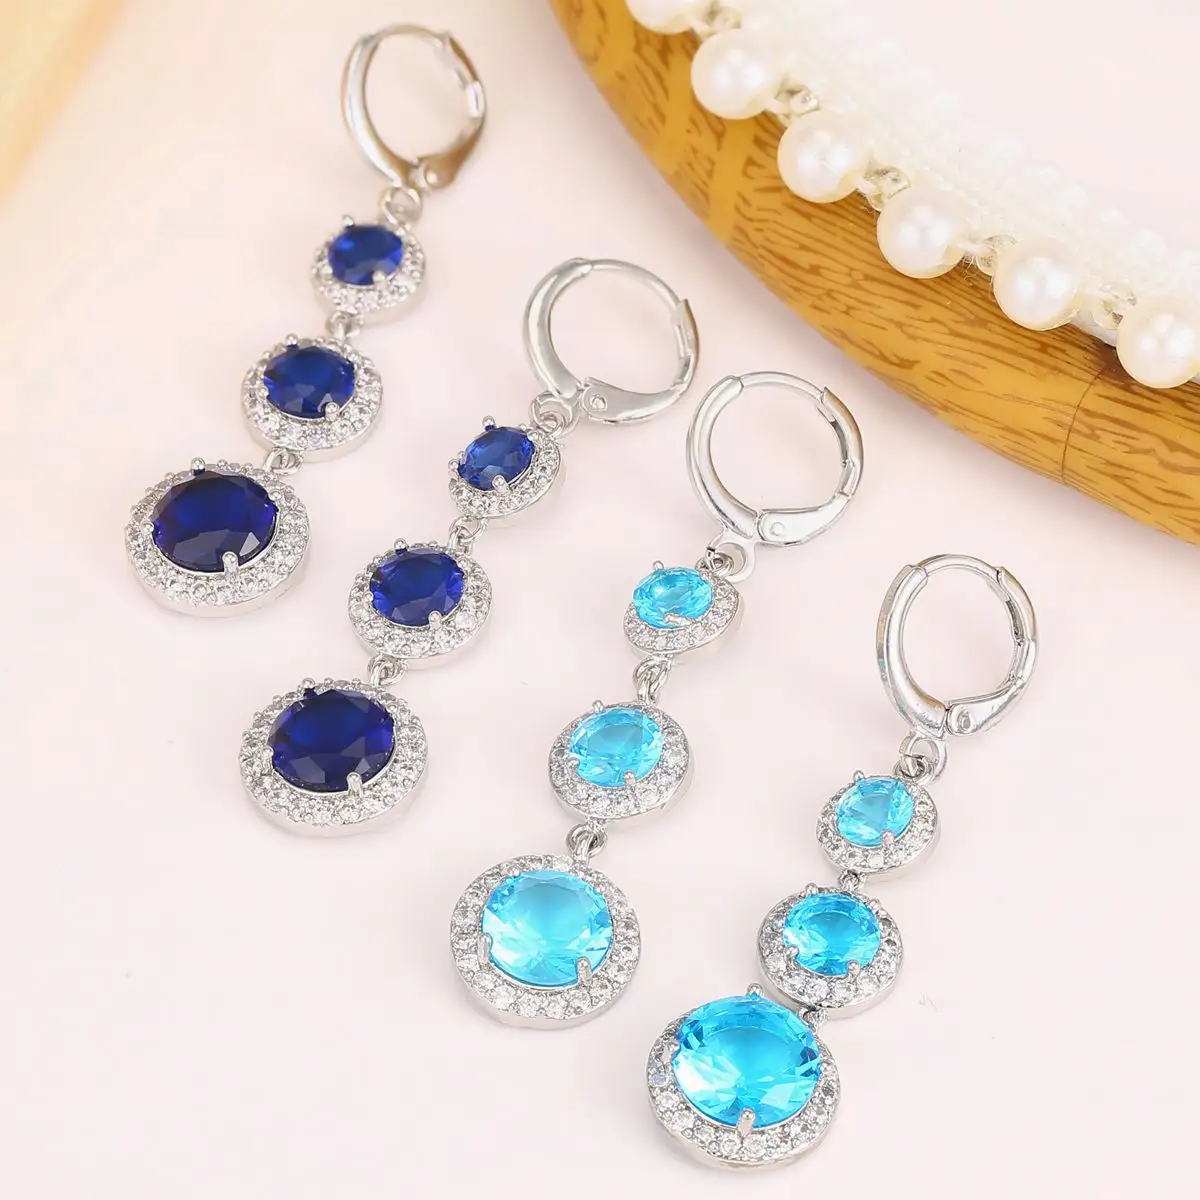 Vintage luxurious earrings blue spinel aqua blue zircon long hoop dangle huggie delicate earrings